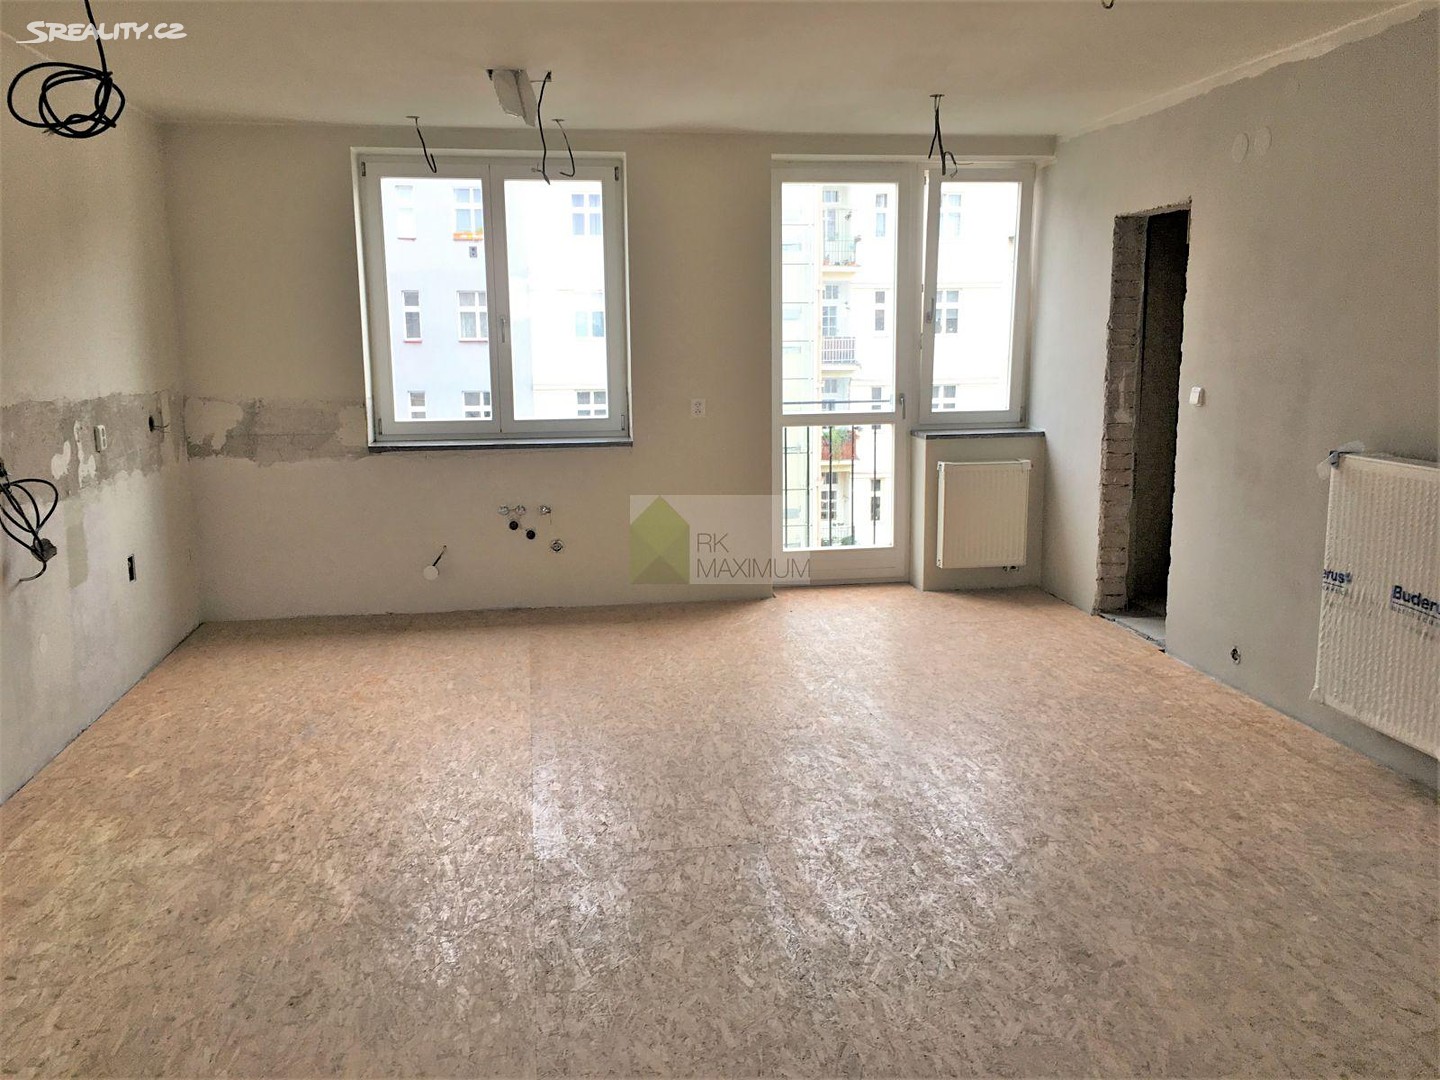 Prodej bytu 5+1 226 m² (Mezonet), Žižkovo náměstí, Praha 3 - Žižkov